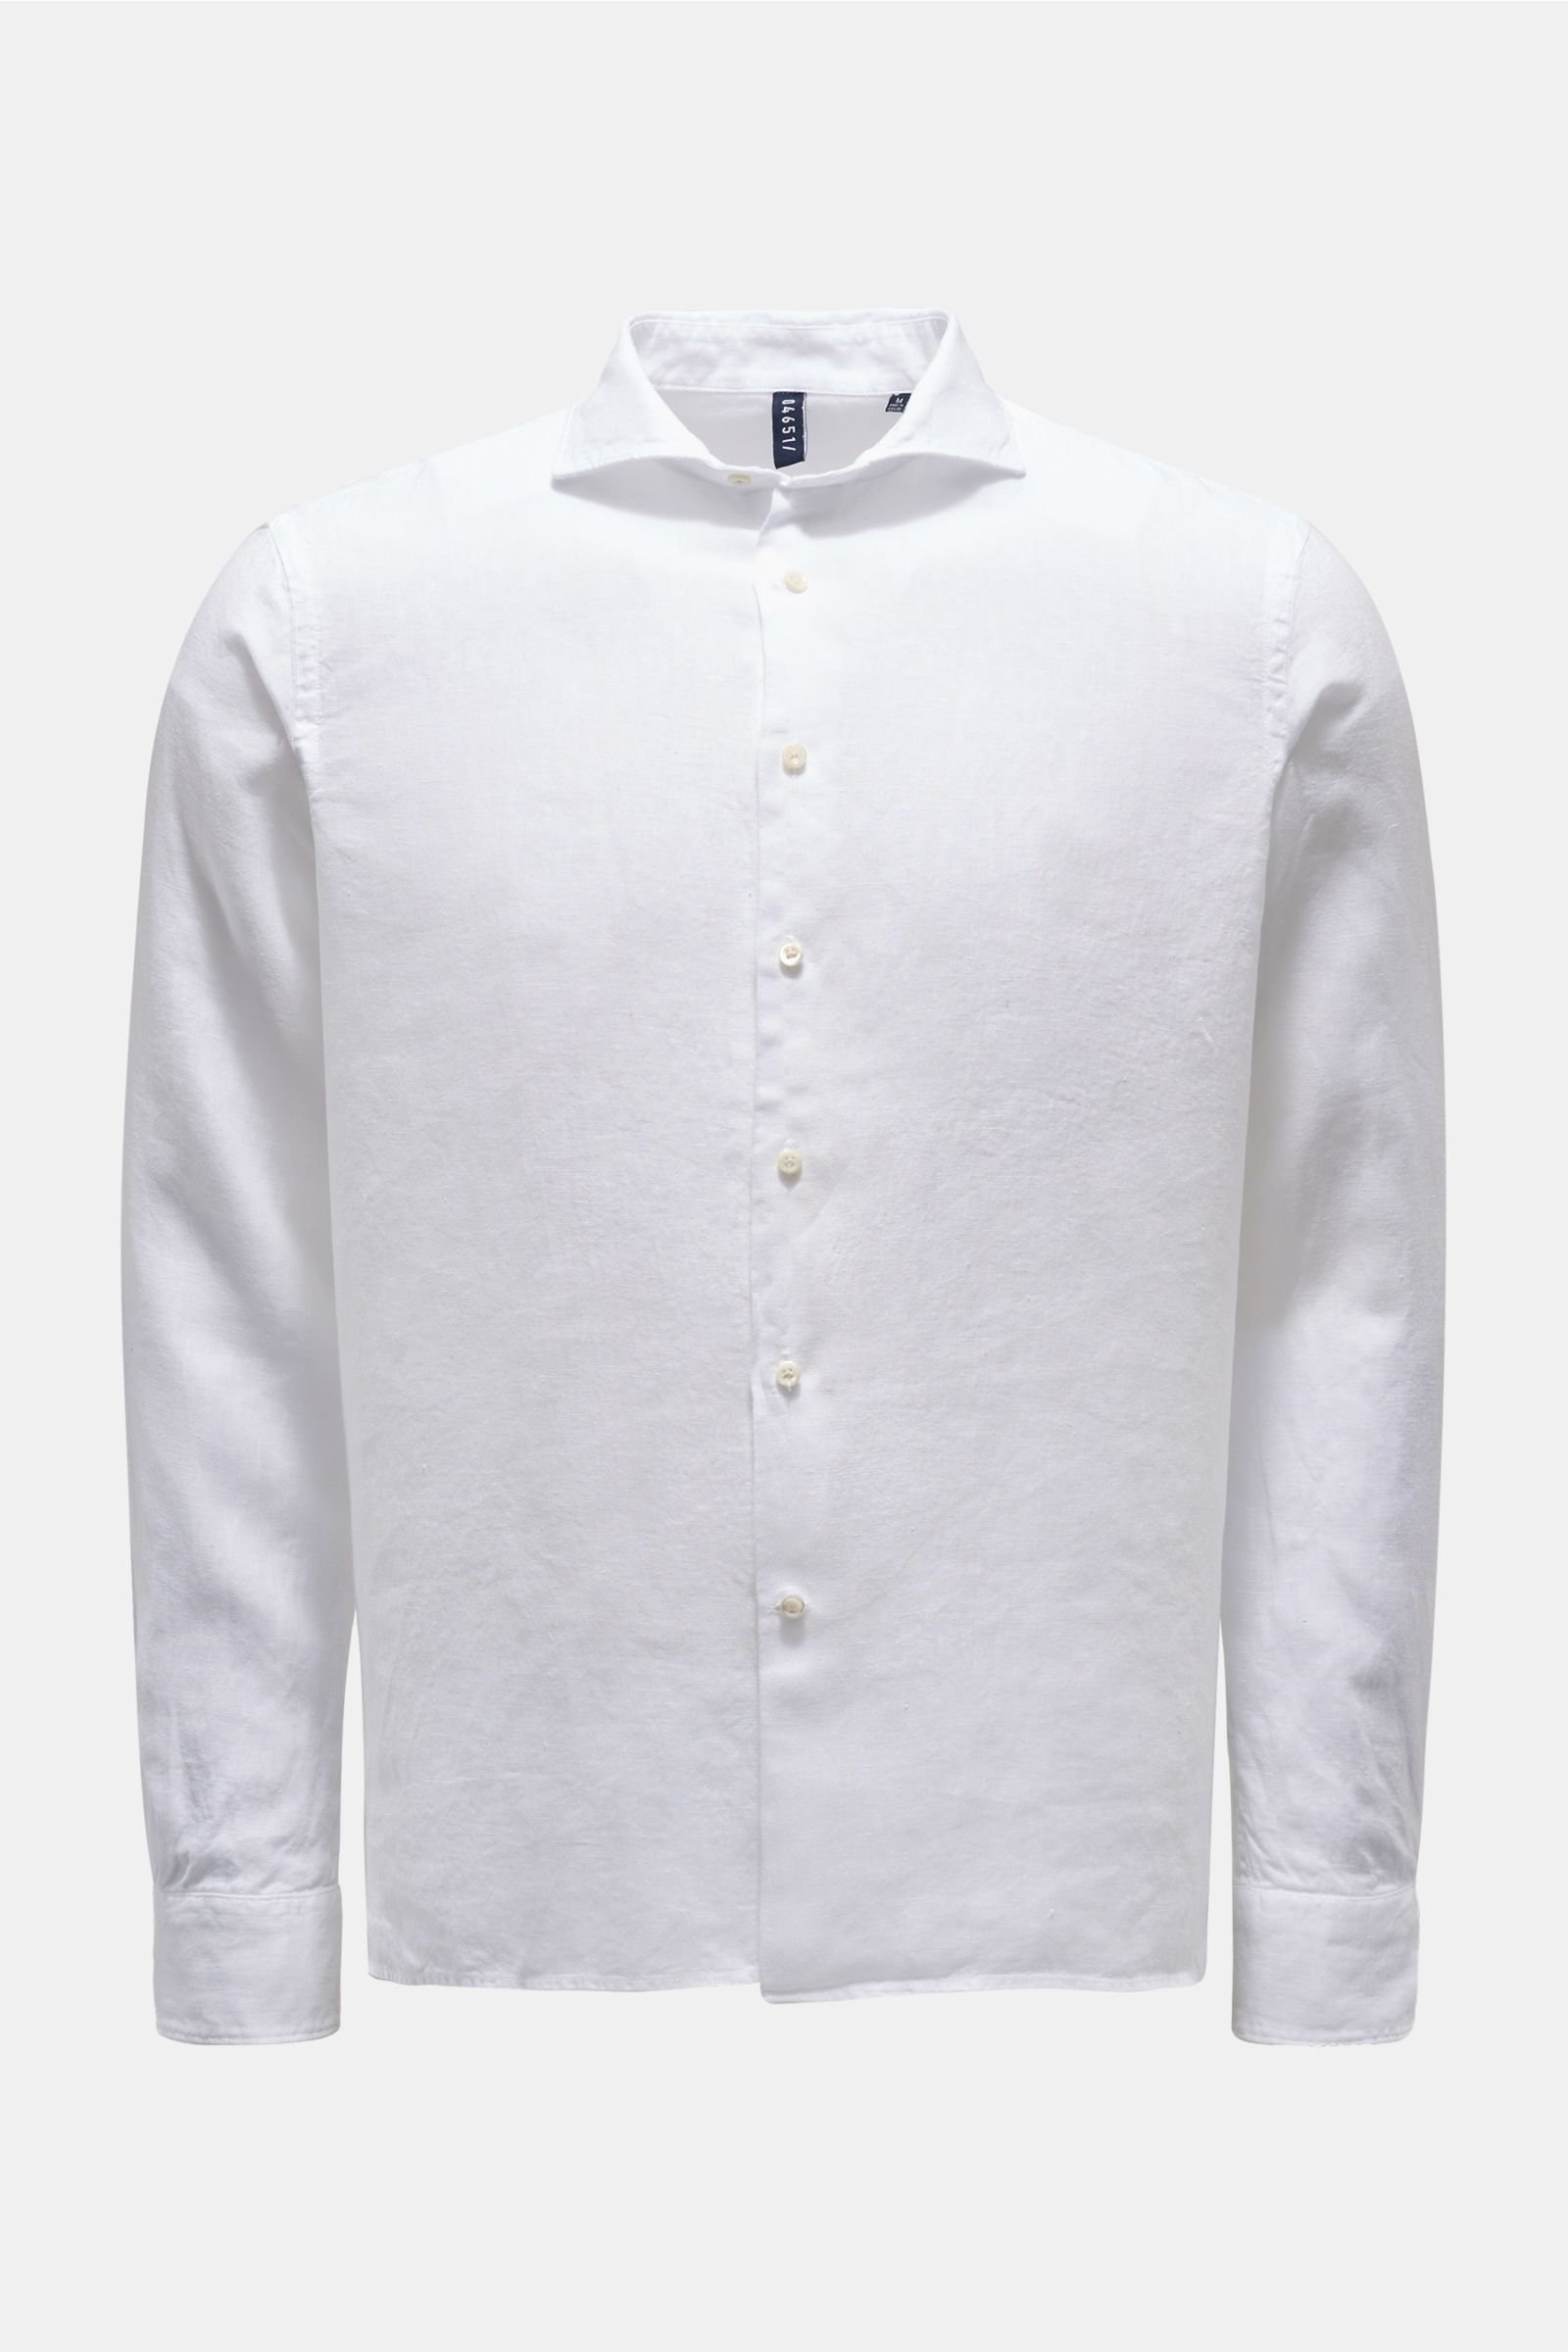 Linen shirt shark collar white